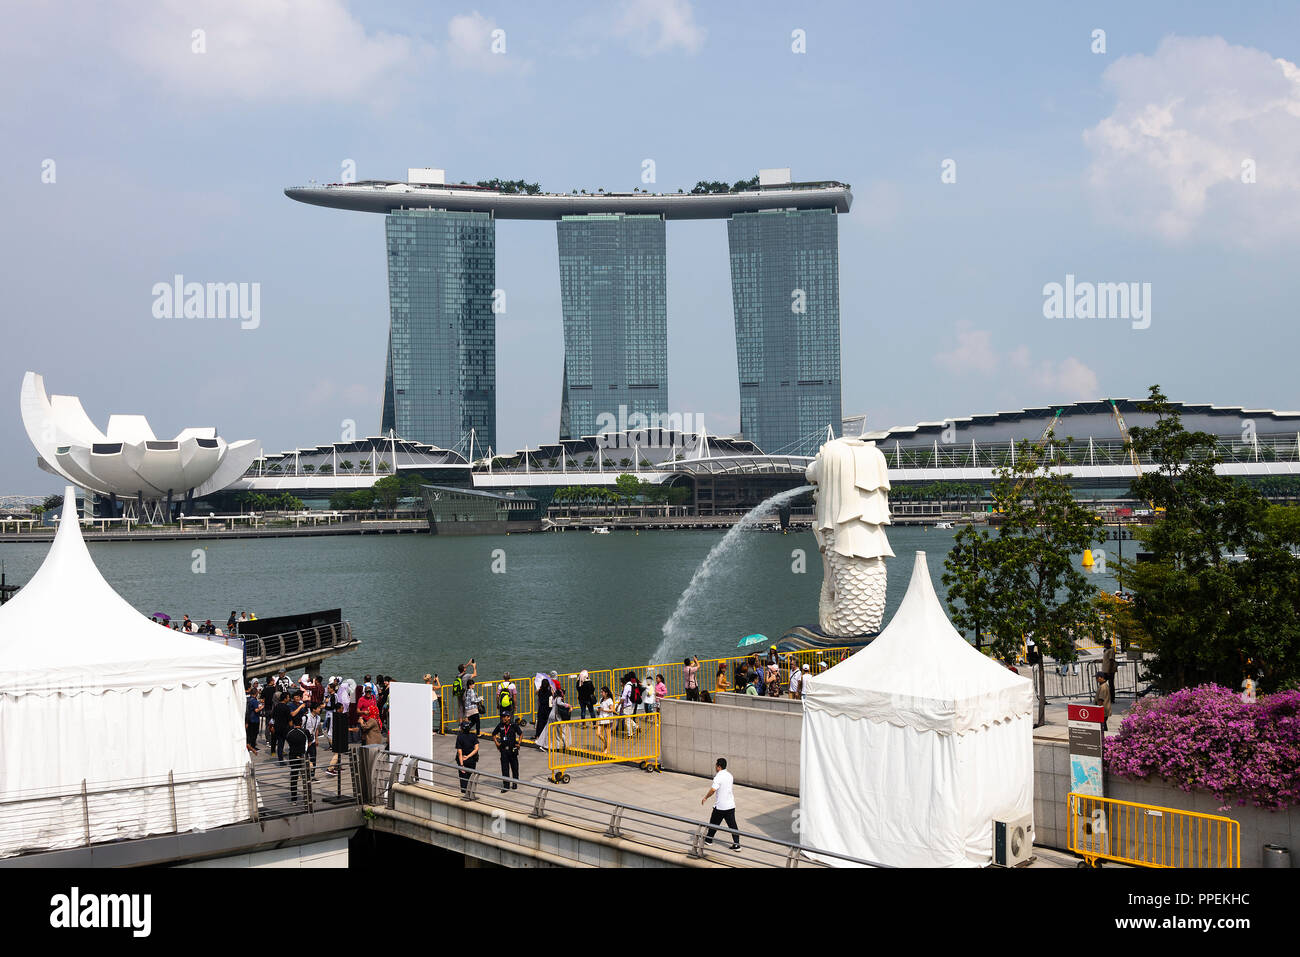 Die Ikonischen Marina Bay Sands Hotel und die ArtScience Museum auf die Bucht in der Innenstadt von Singapur Republik Singapur Asien Stockfoto